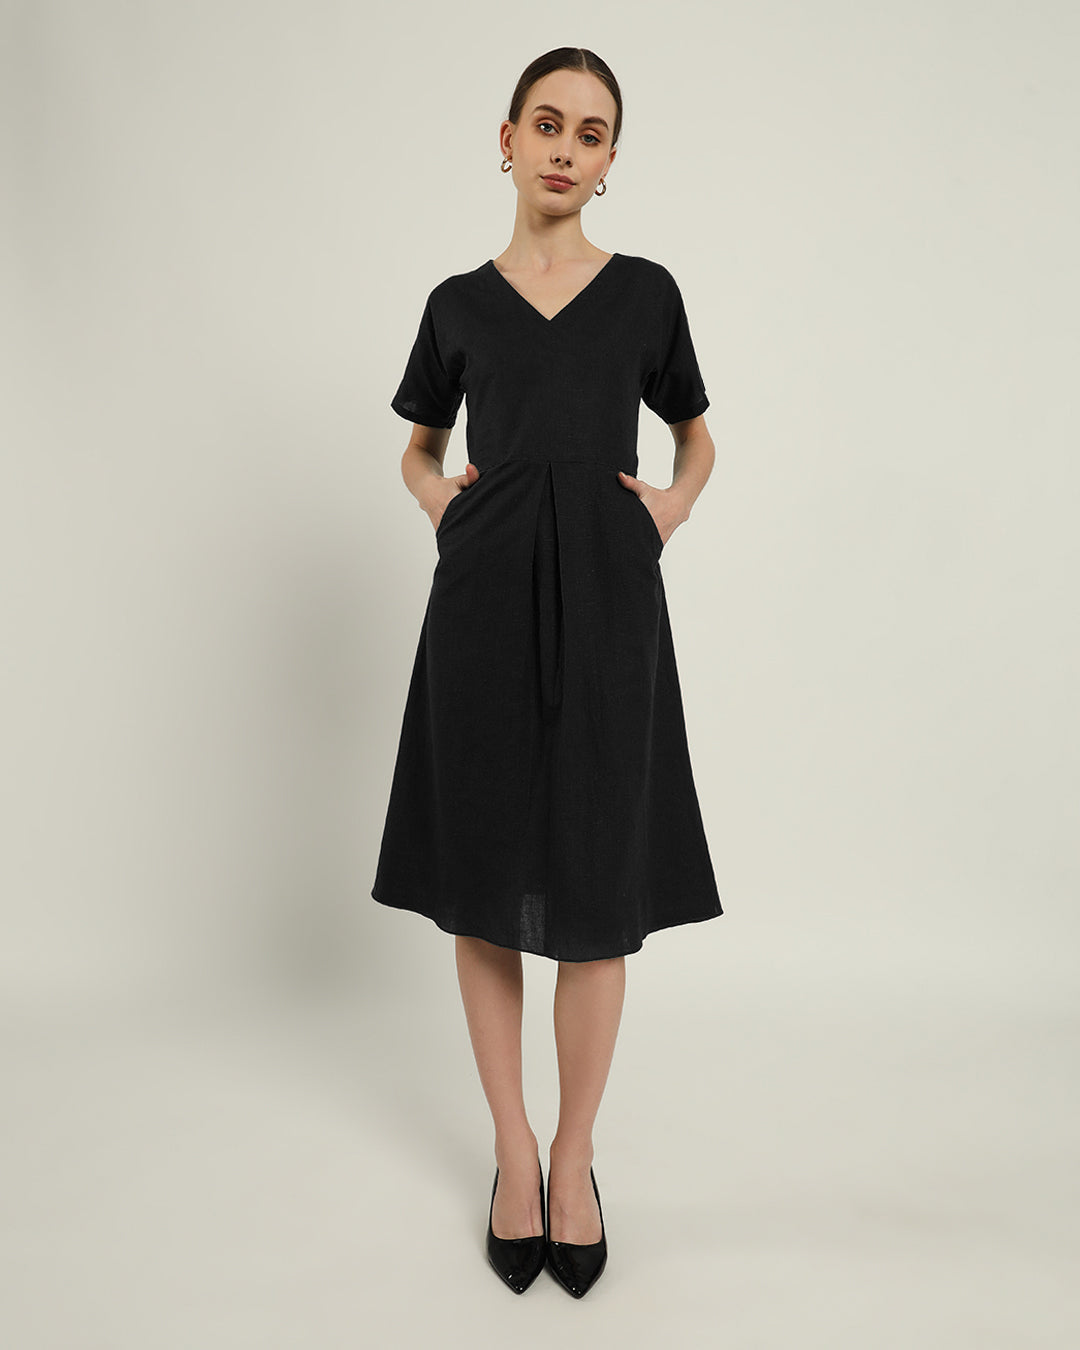 The Memphis Daisy Noir Linen Dress